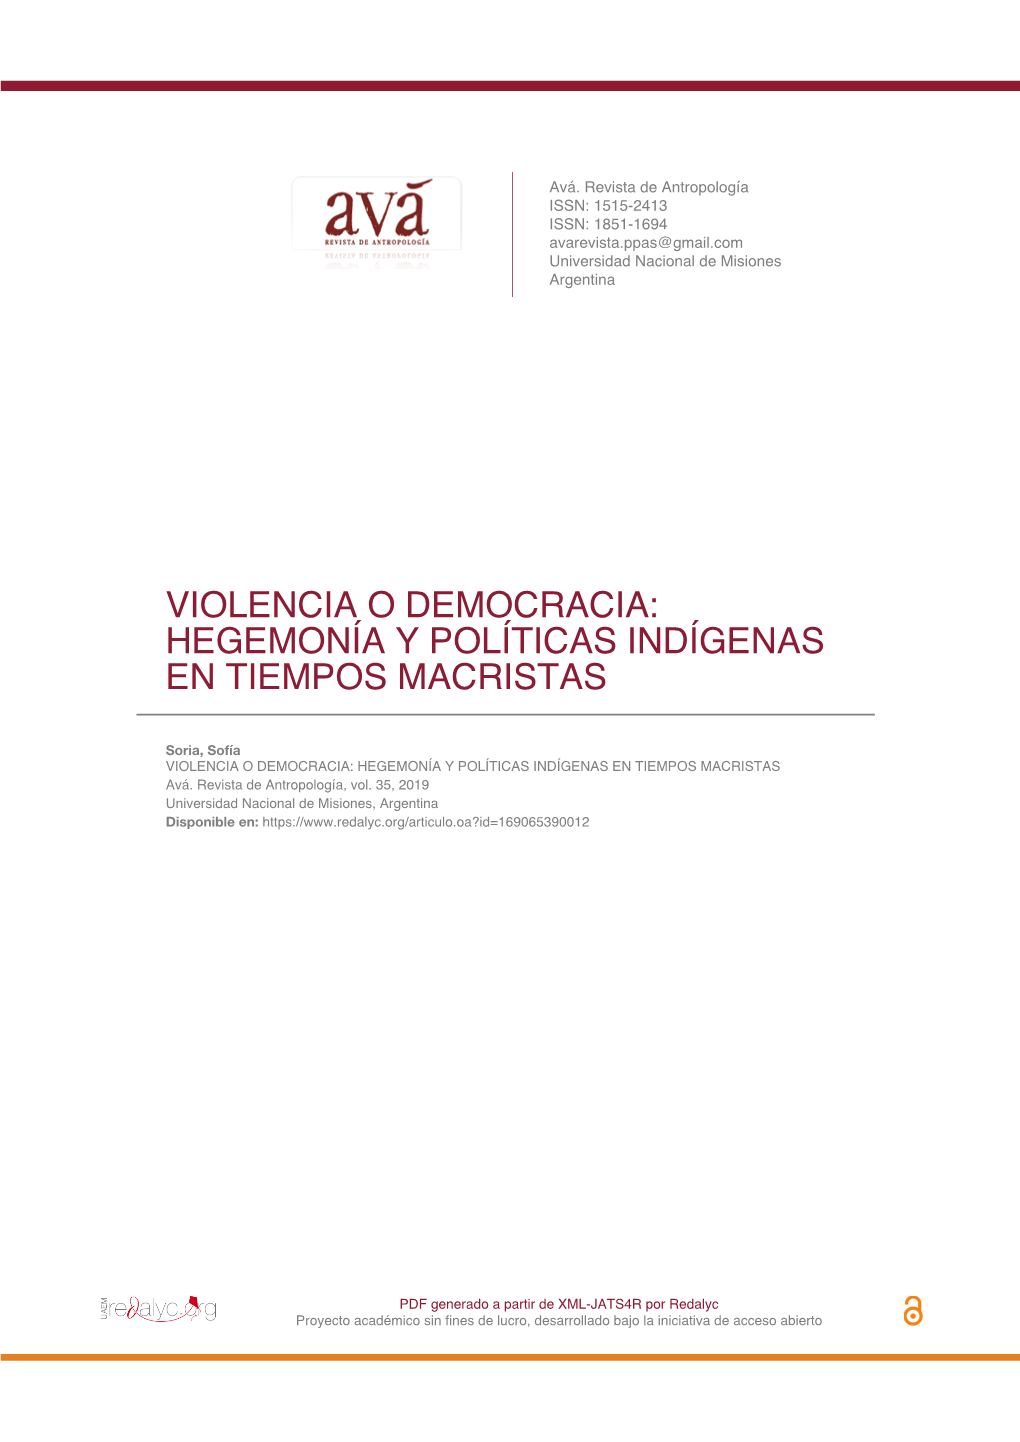 Violencia O Democracia: Hegemonía Y Políticas Indígenas En Tiempos Macristas